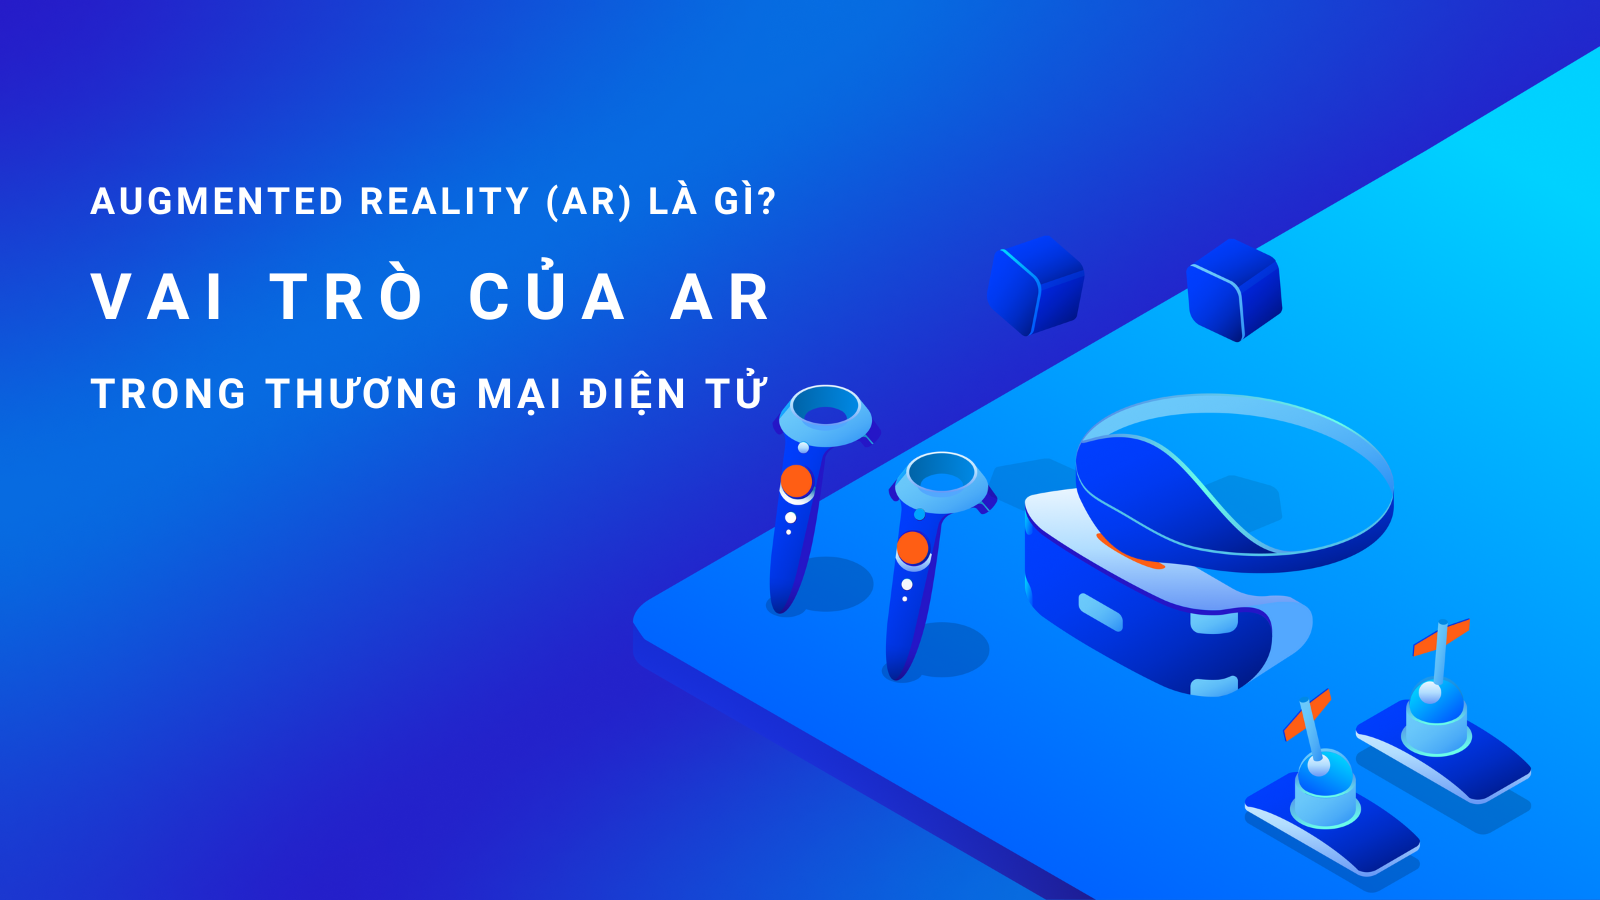 Augmented Reality (AR) là gì Lợi ích của AR trong thương mại điện tử